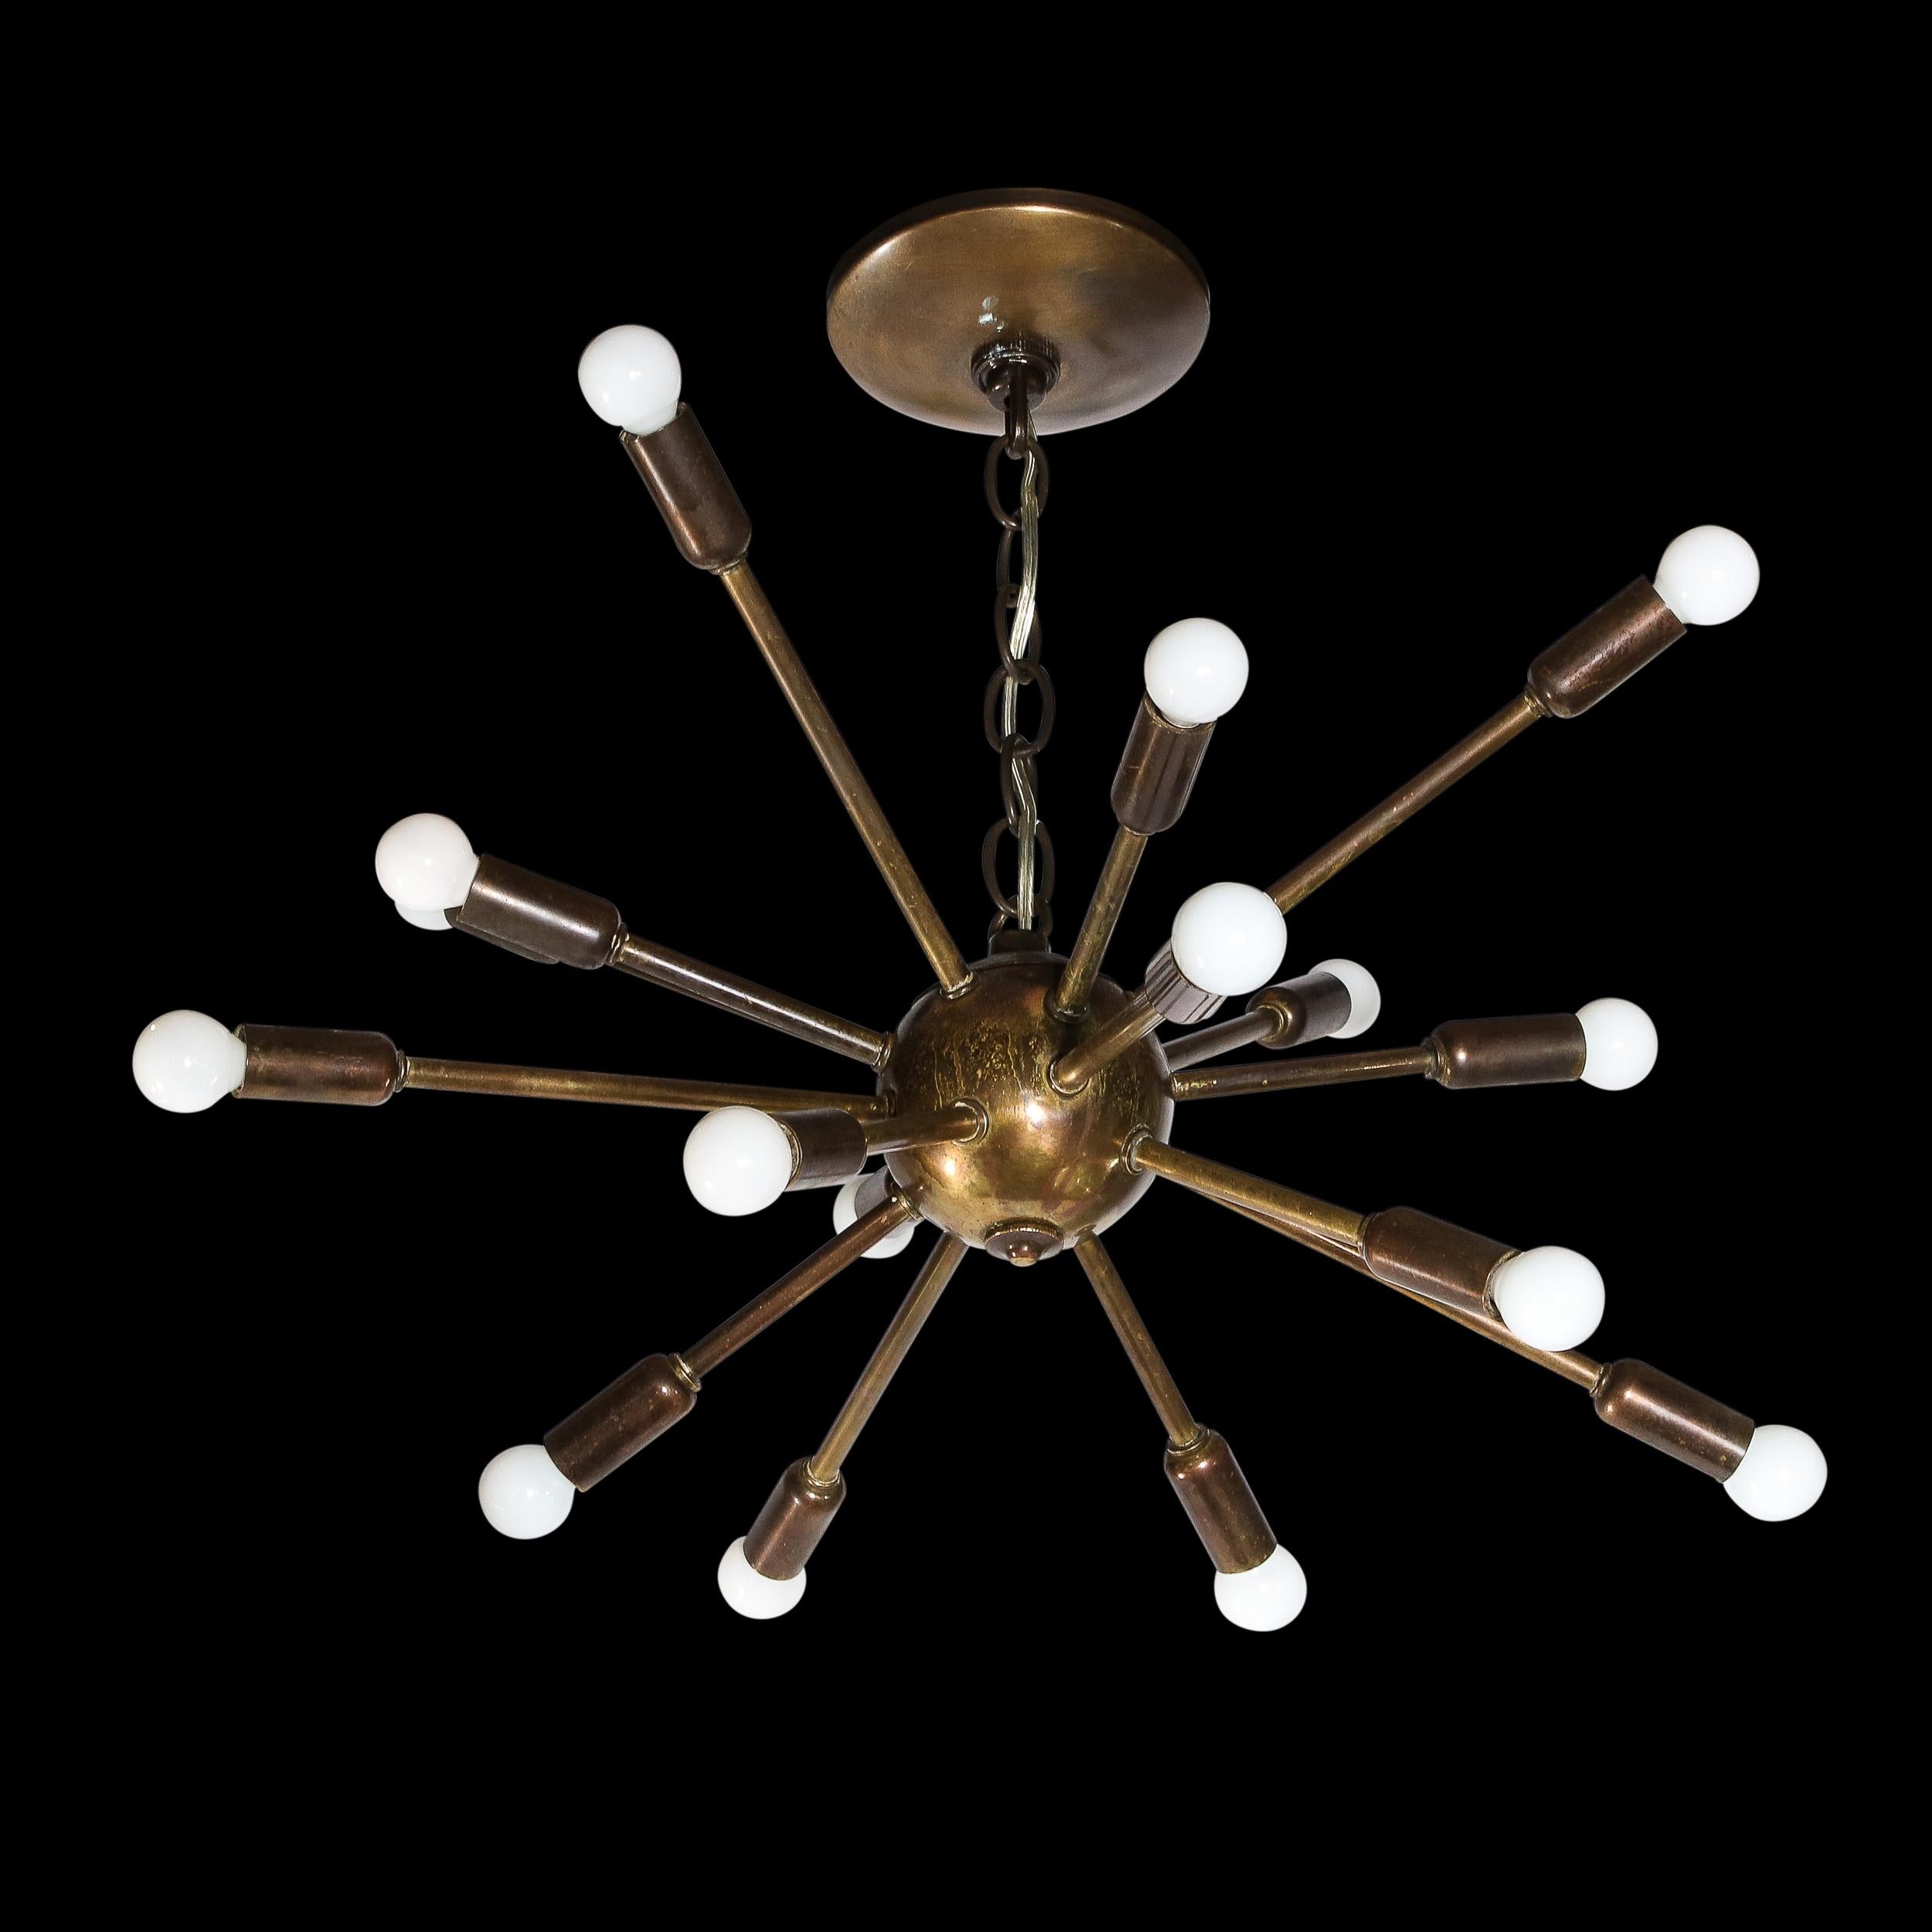 Dieser raffinierte und grafische Sputnik-Kronleuchter wurde um 1960 in Italien hergestellt. Sie besteht aus sechzehn Armen, die von einem kugelförmigen Körper ausgehen, der am Ende mit Kandelaberbirnen versehen ist. Mit seiner skulpturalen